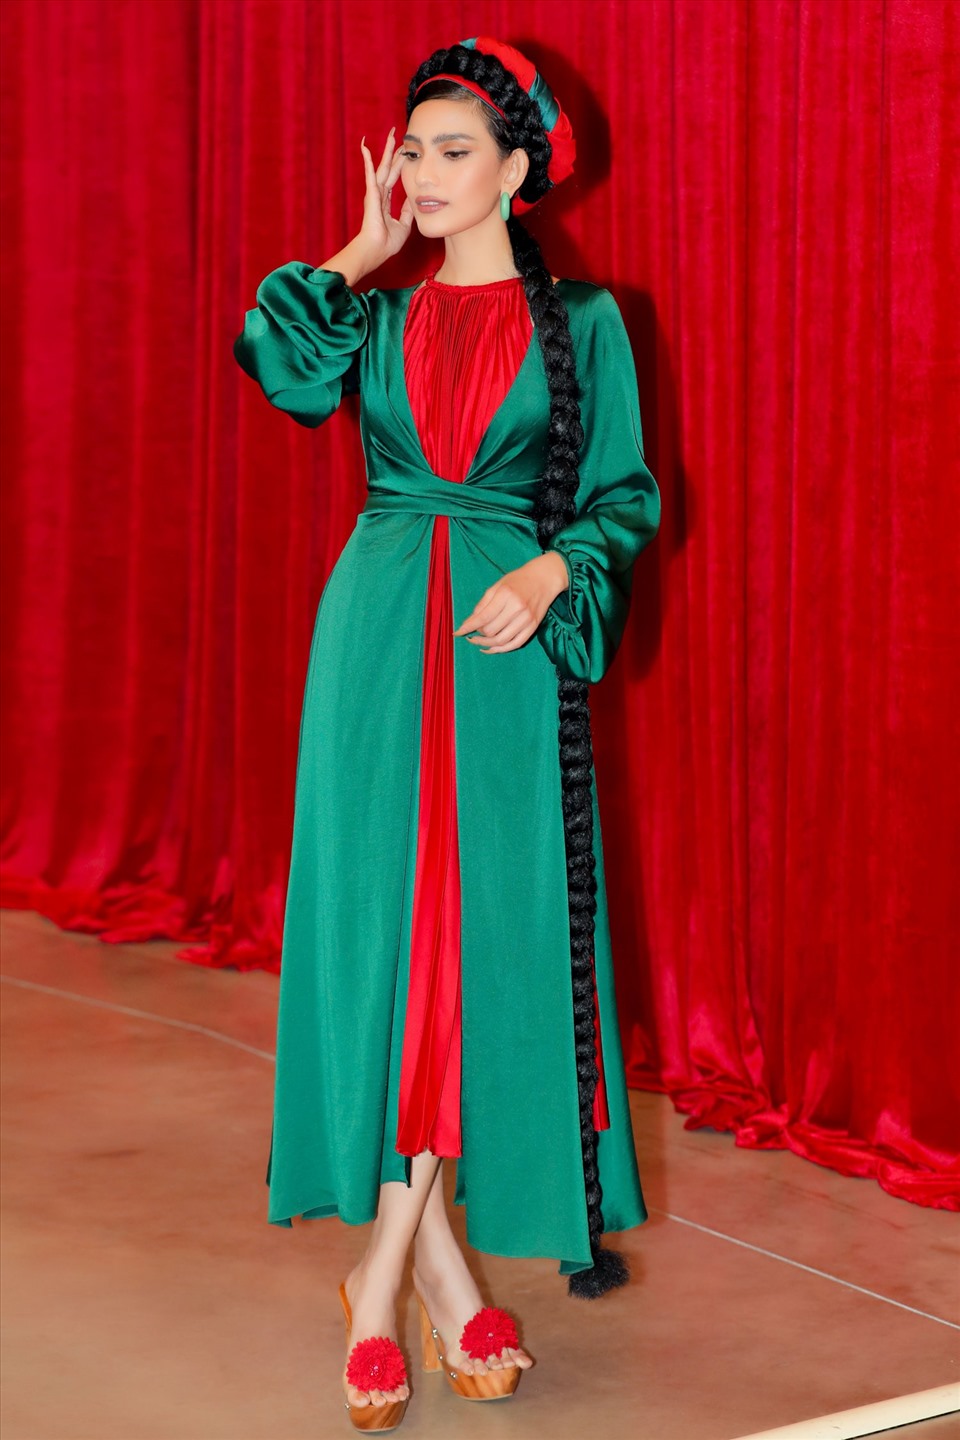 Được biết, bộ váy tứ thân là một trong những mẫu thiết kế độc đáo nhất của Adrian Anh Tuấn trong năm 2020. Sự hoài cổ với những cô gái Kinh Bắc khoác áo tứ thân đi dự lễ hội được tôn vinh đậm nét.